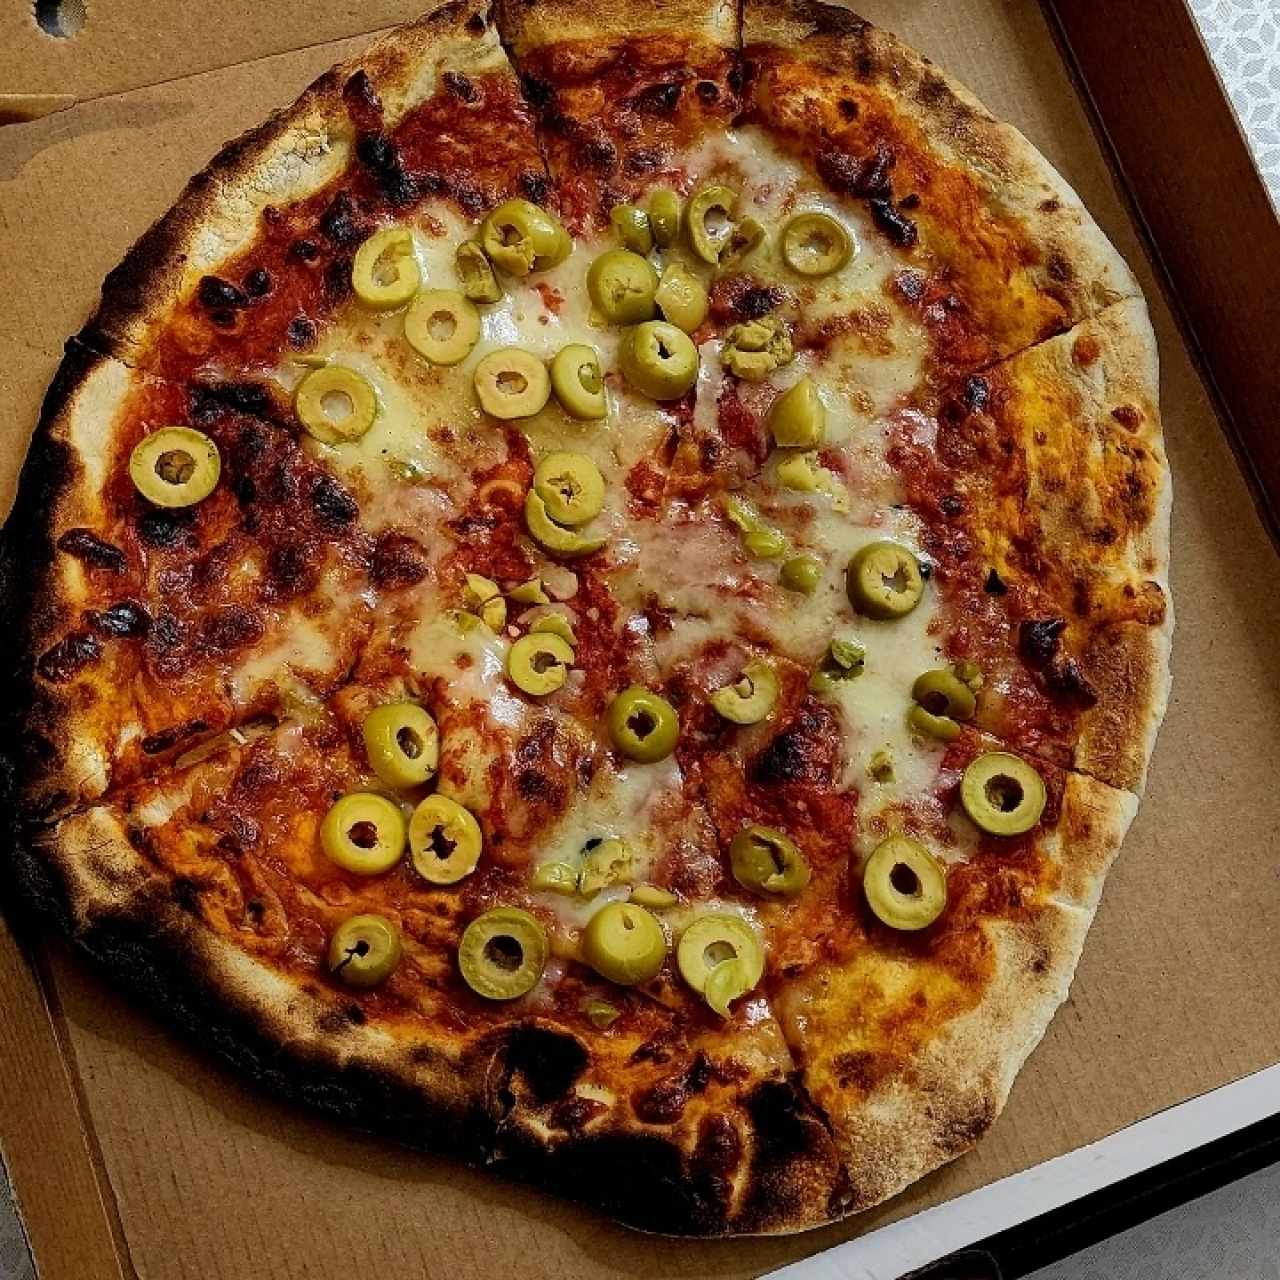 pizza con Aceitunas verdes/chica, fria, cara...